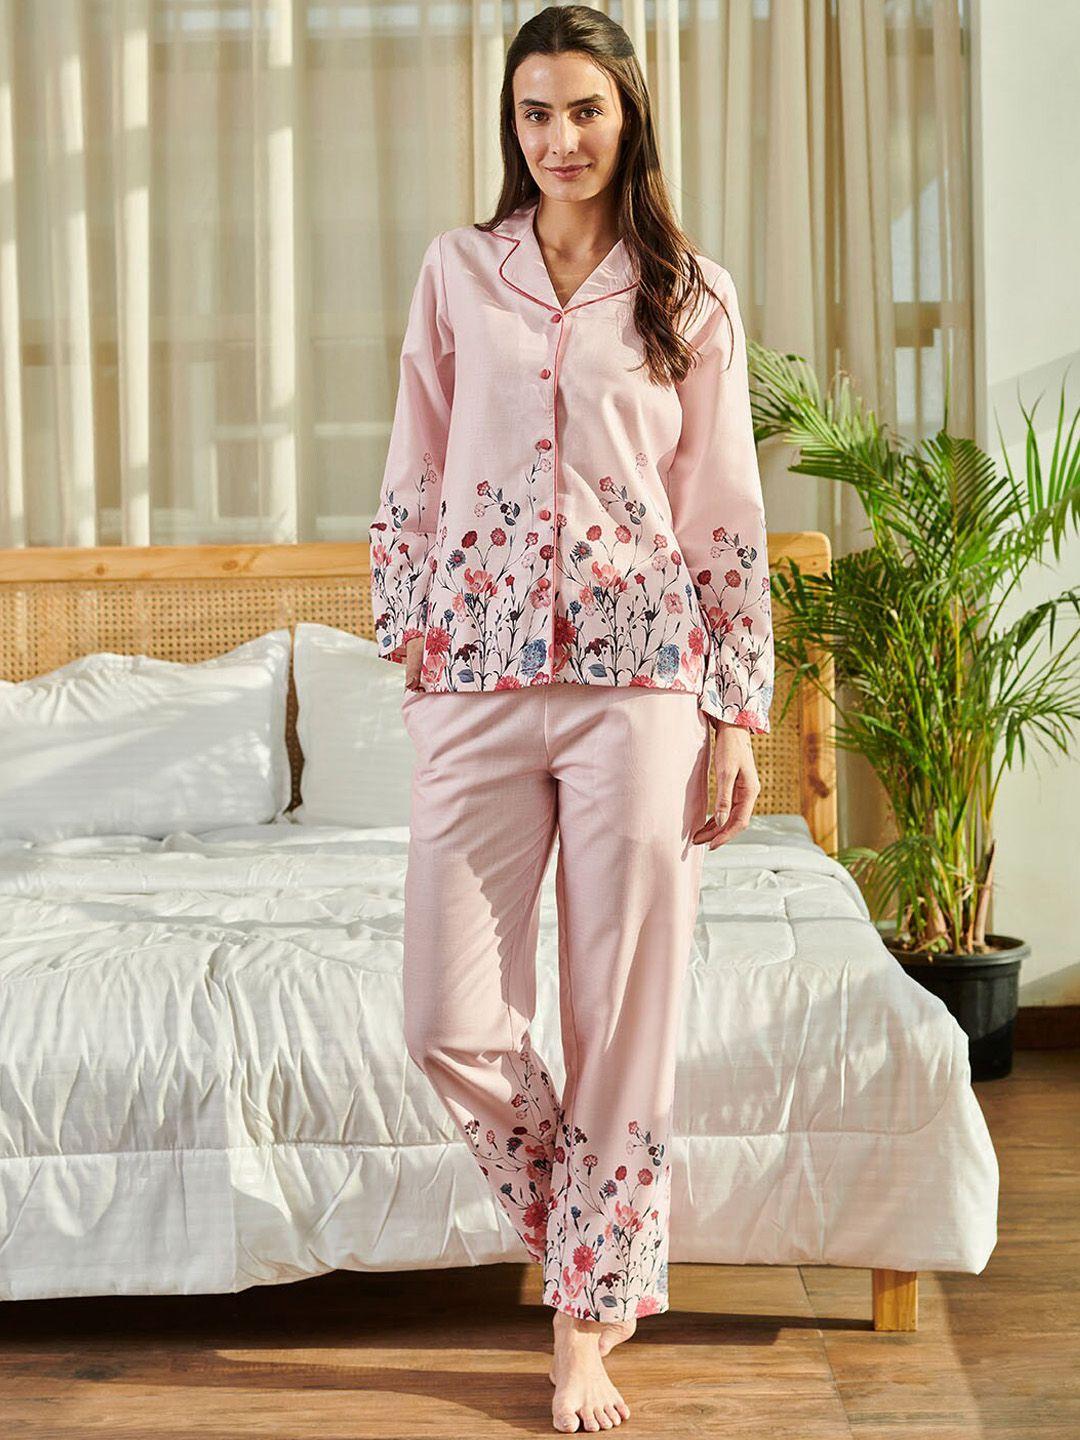 dusk attire printed shirt with pyjamas night suit